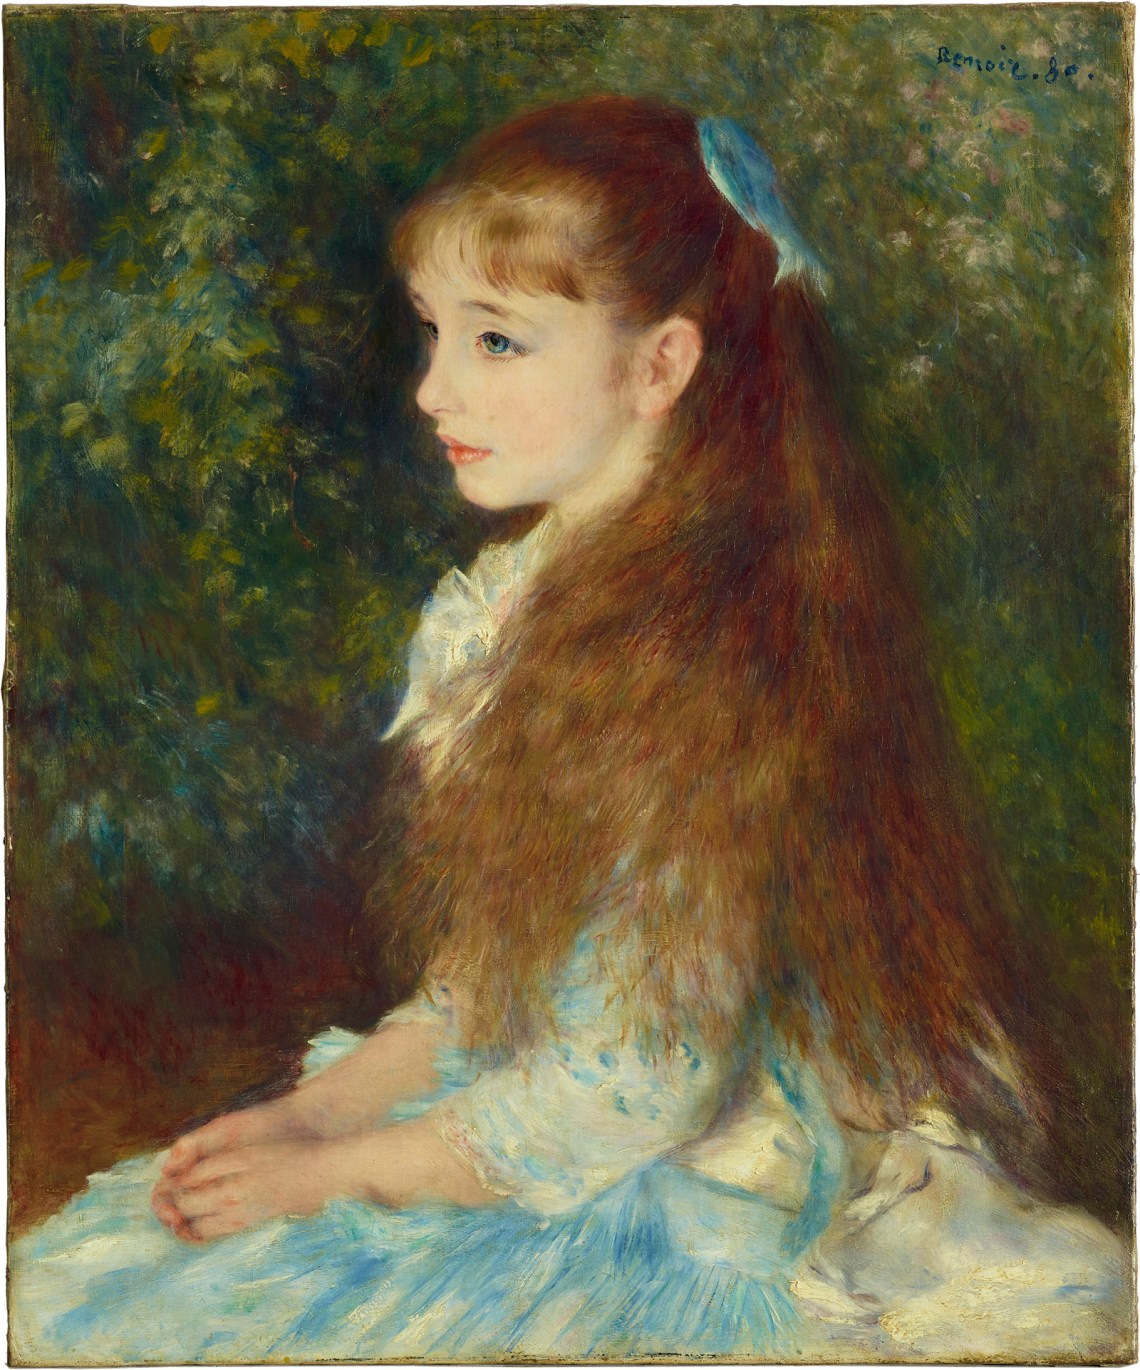 Mlle Irène Cahen d’Anvers; painting by Pierre-Auguste Renoir